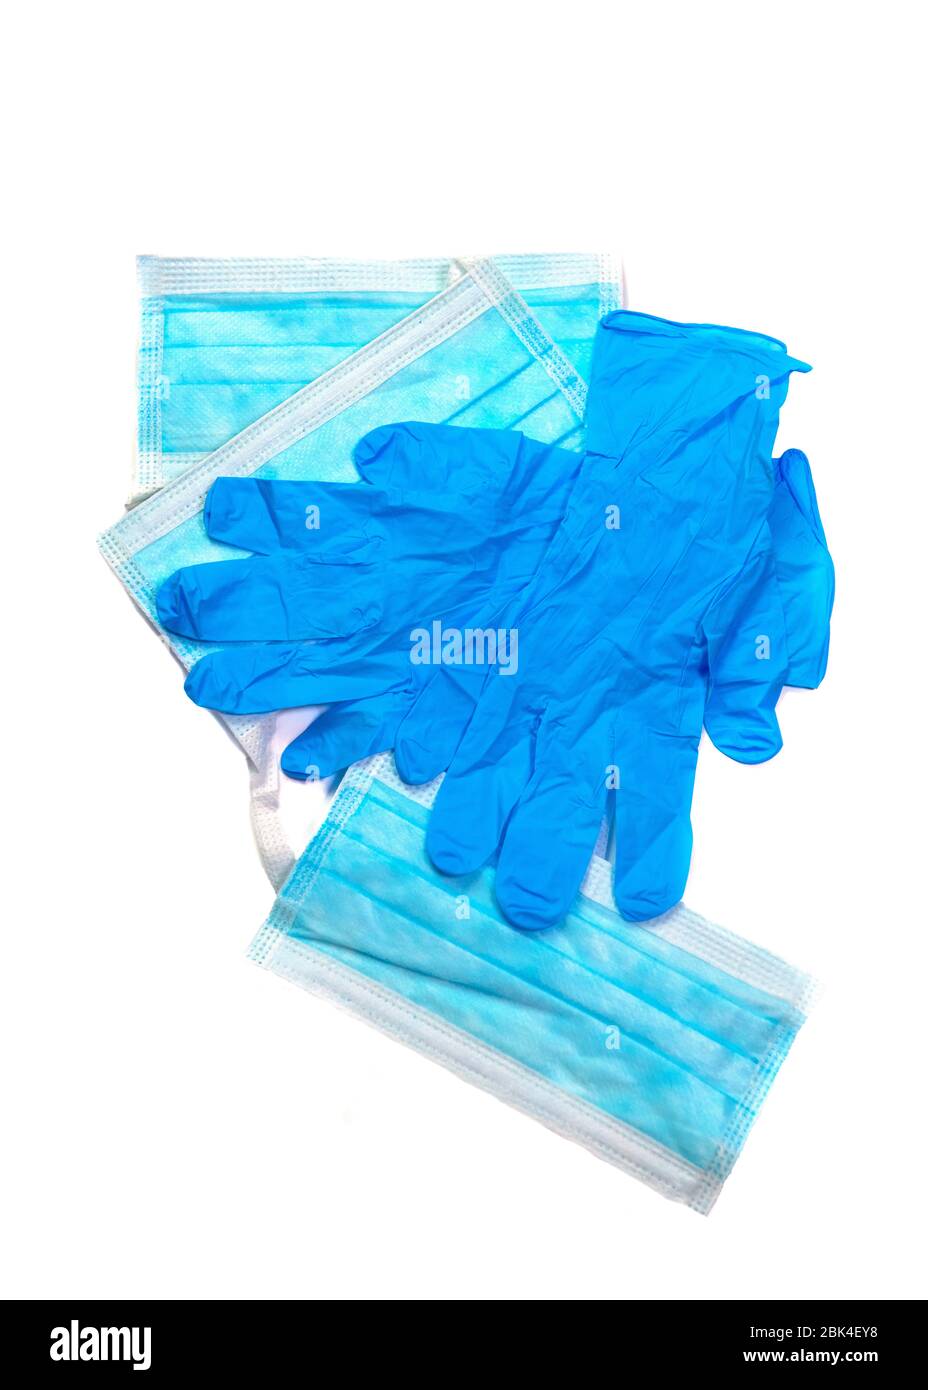 Vertikale persönliche Schutzausrüstung blaue Latexhandschuhe mit Gesichtsmaske, die Sie tragen könnten, um Sie vor einem Virus zu schützen, isoliert auf einem weißen Rücken Stockfoto